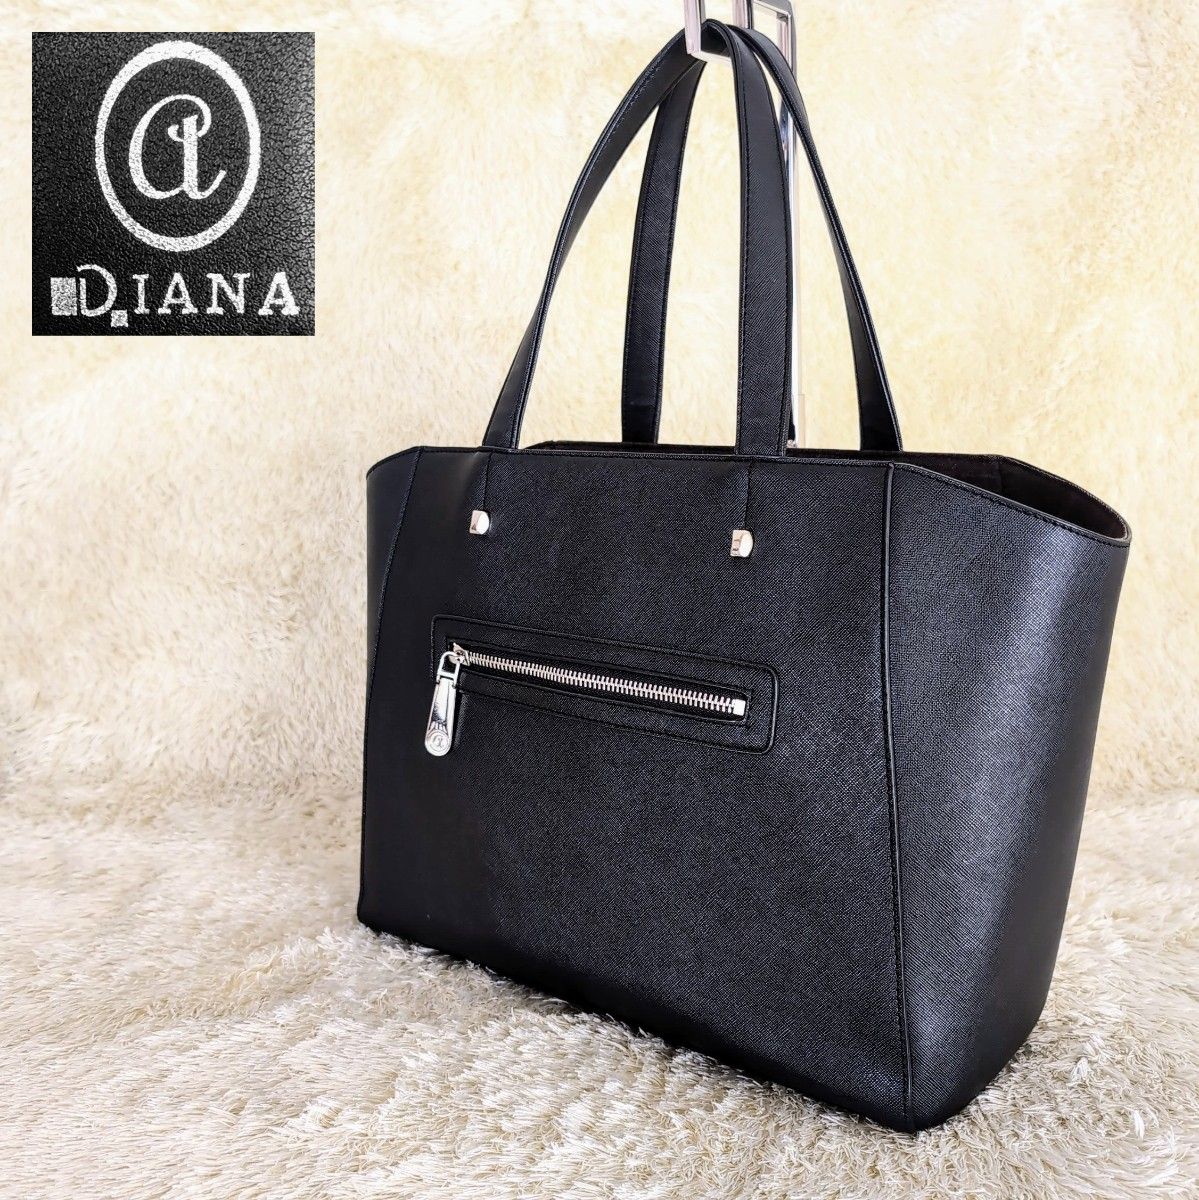 DIANA トートバッグ ビジネスバッグ ブラック 黒 レザー レディース アルテミスバイダイアナ ハンドバッグ